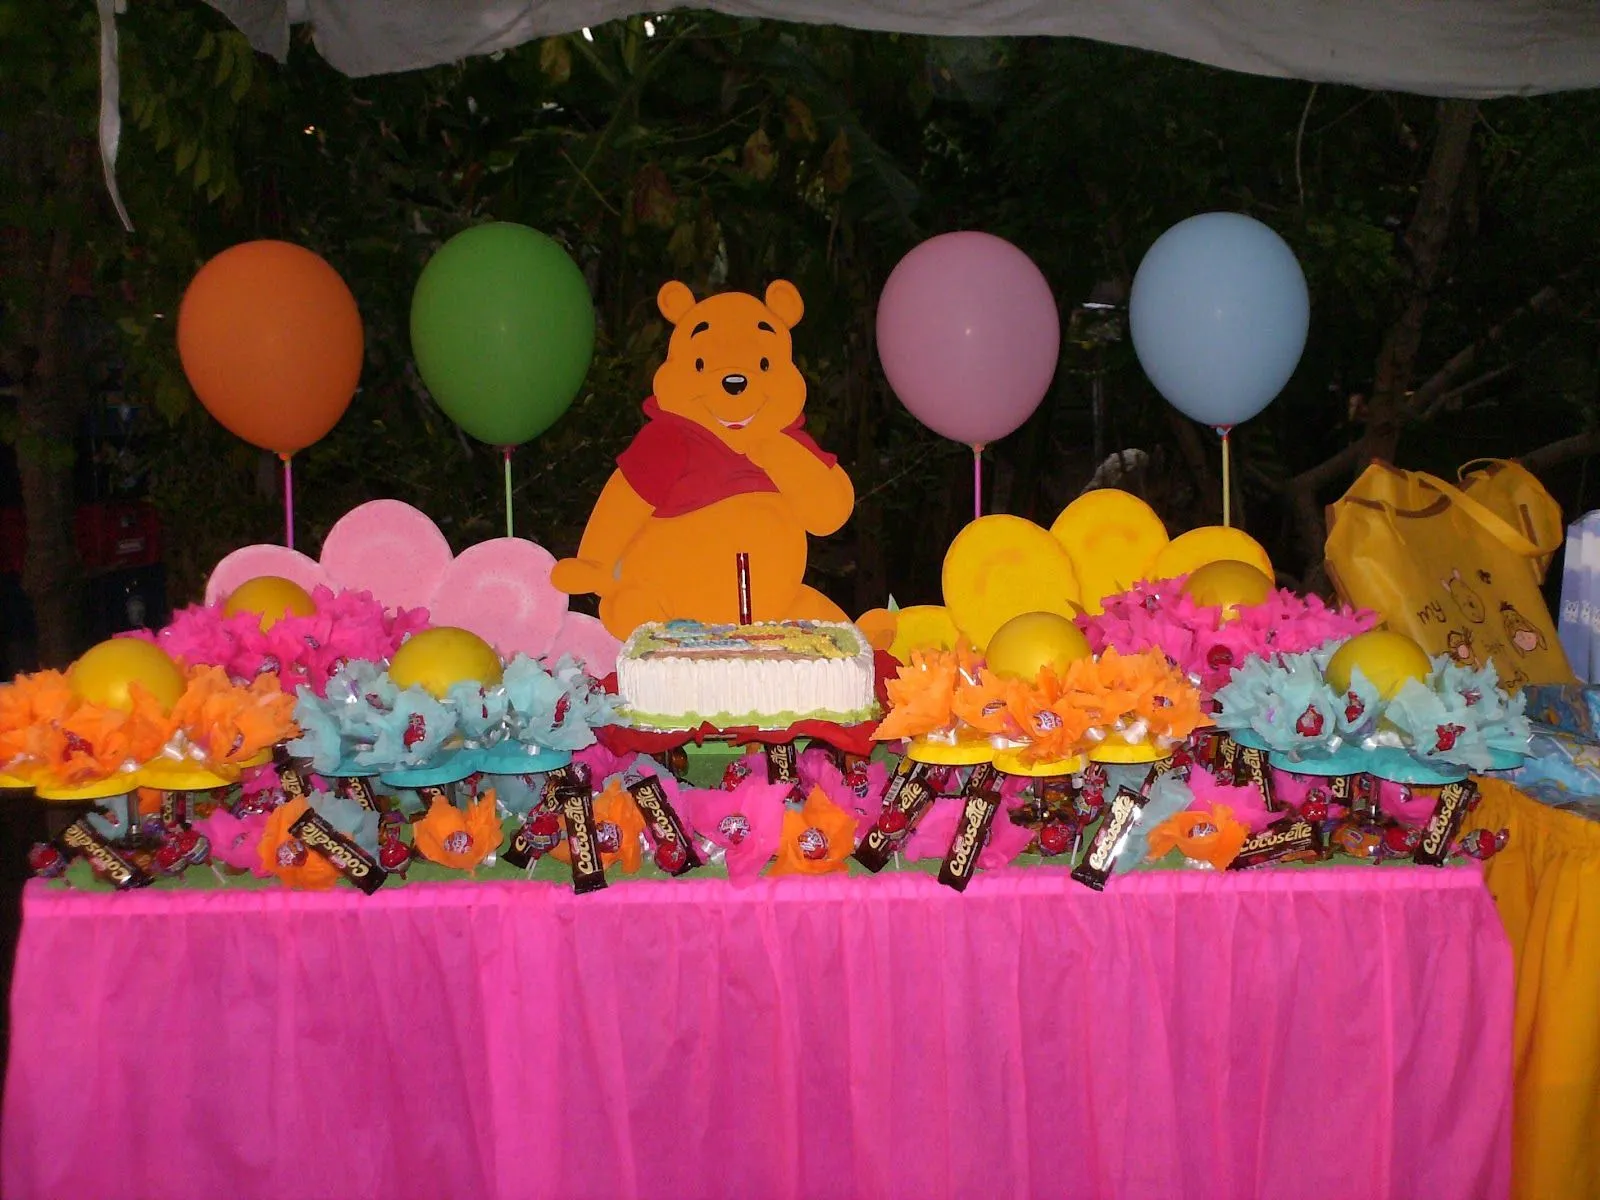 Party & Piñatas "Variedades Dana's": Winnie de Pooh